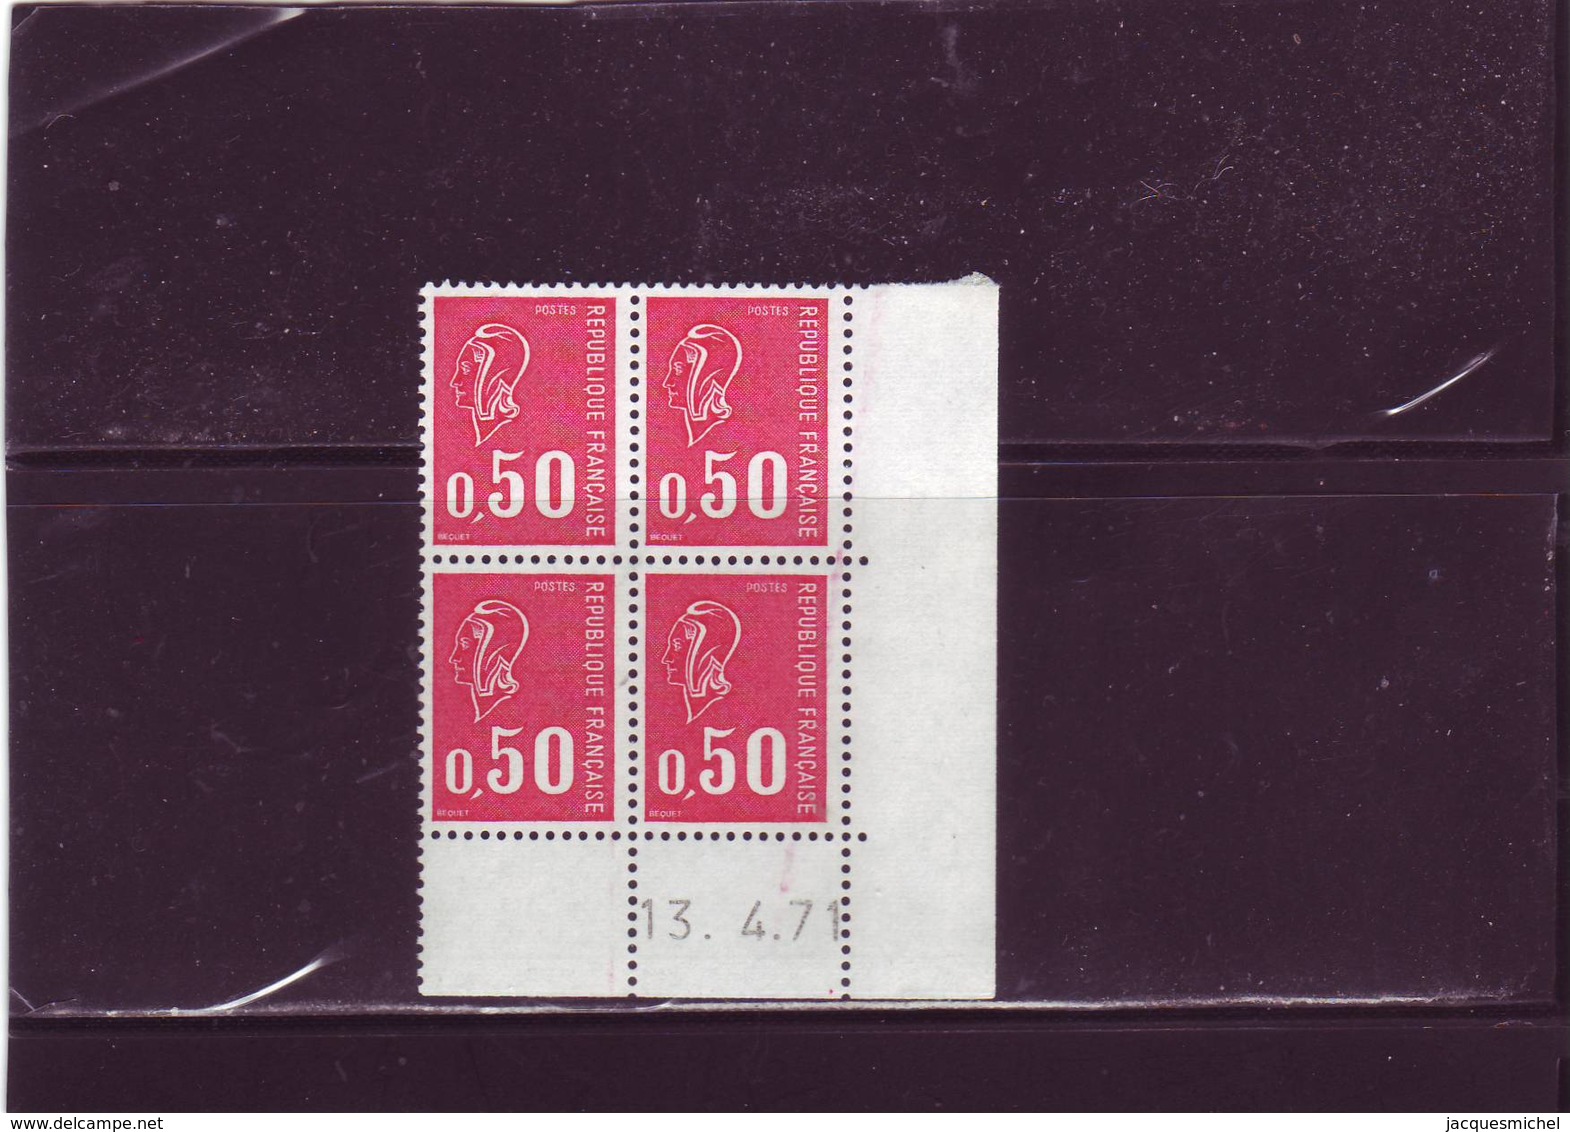 N° 1664 - 0,50 F BEQUET - Sans PHO - 13.04.1971 - - 1970-1979